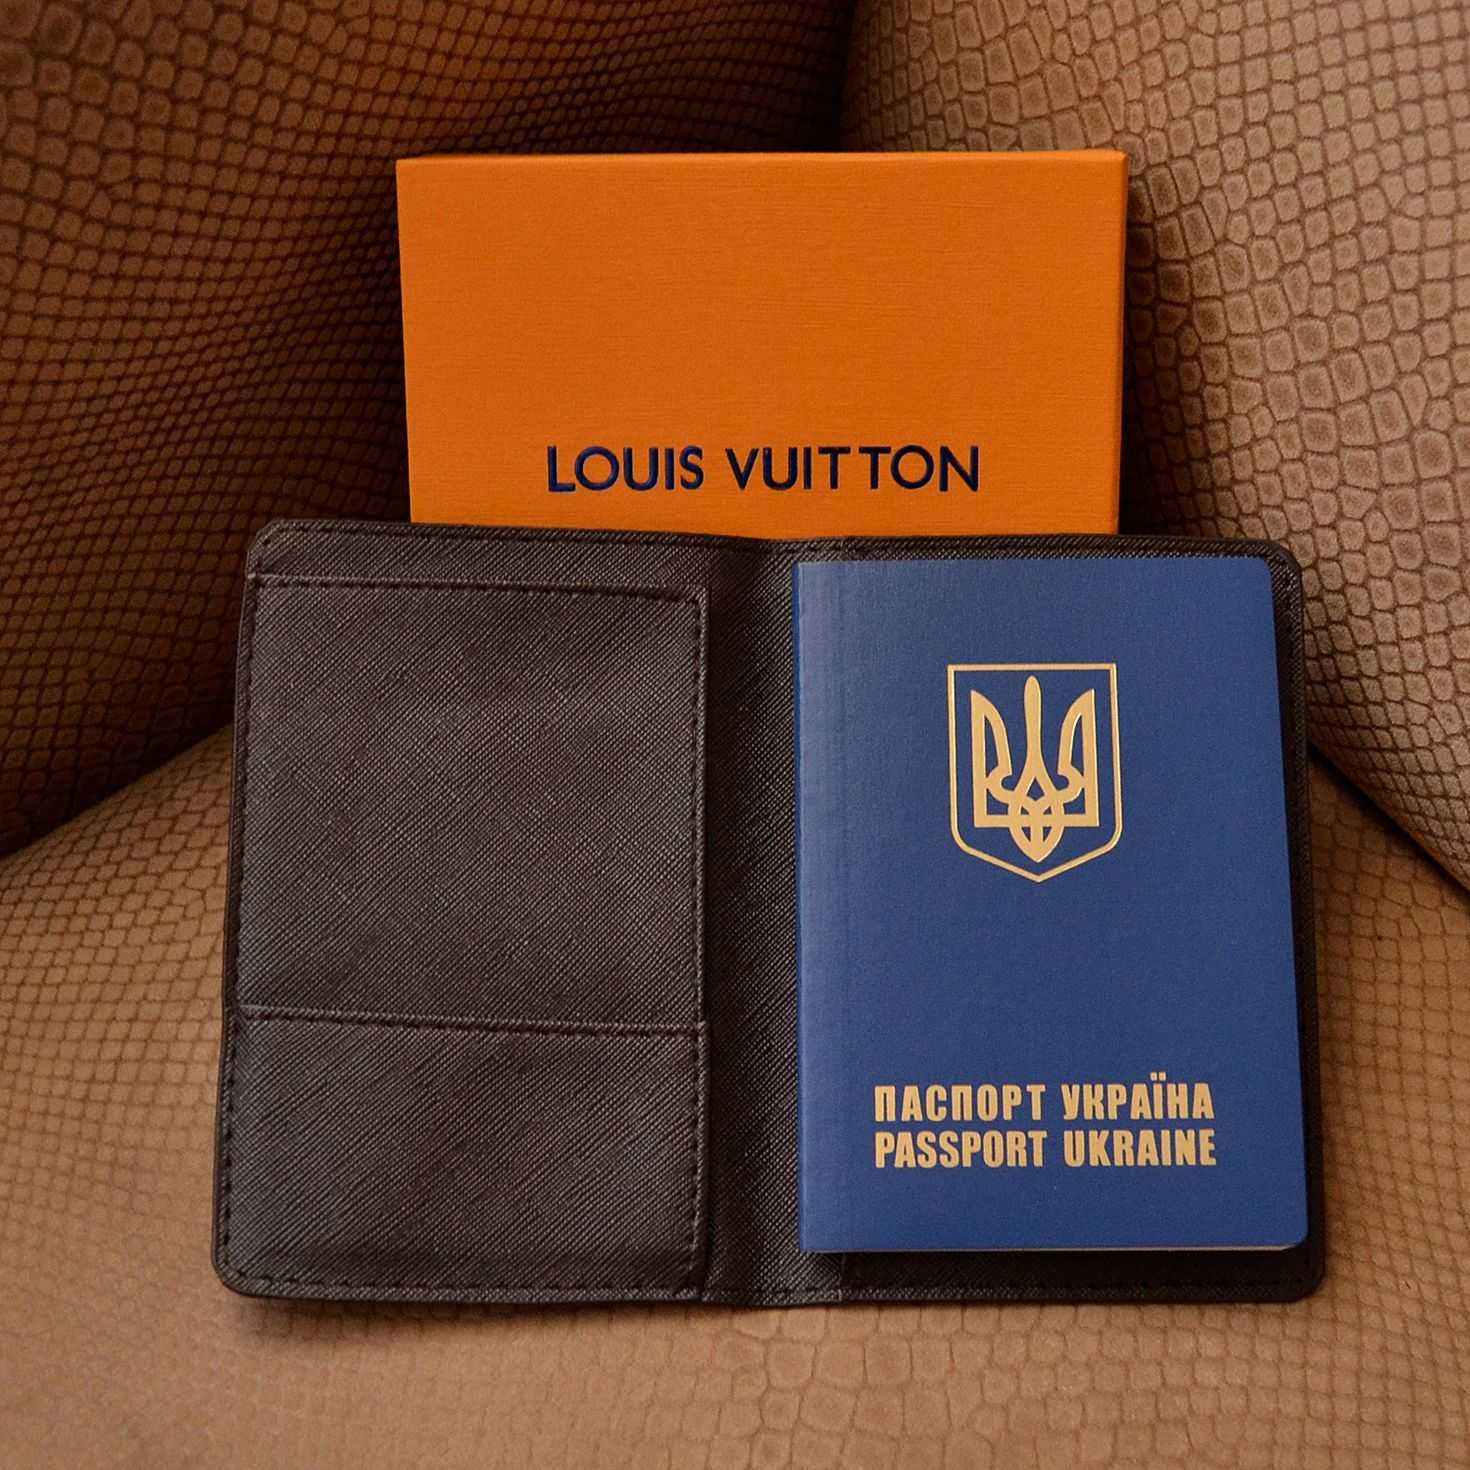 Обложка для паспорта Louis Vuitton для документов загранпаспорт